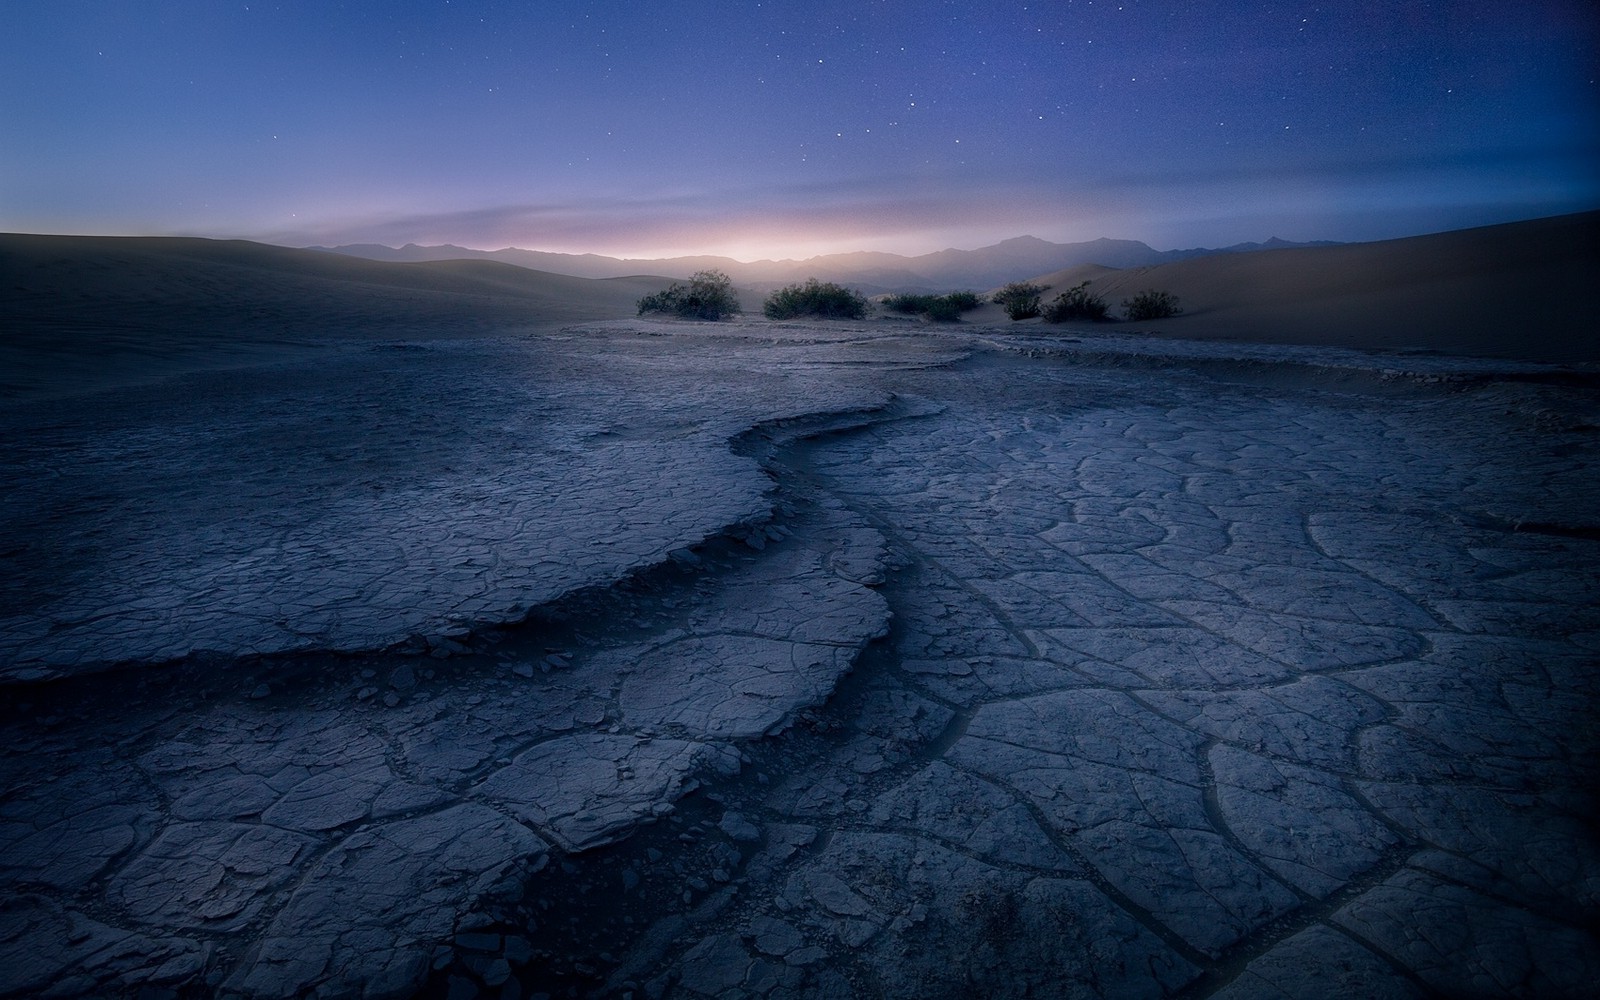 nature, Landscape, Death Valley, Sunrise, Shrubs, Mountain, Mist, Blue, Stars, Desert, California, Dune Wallpaper